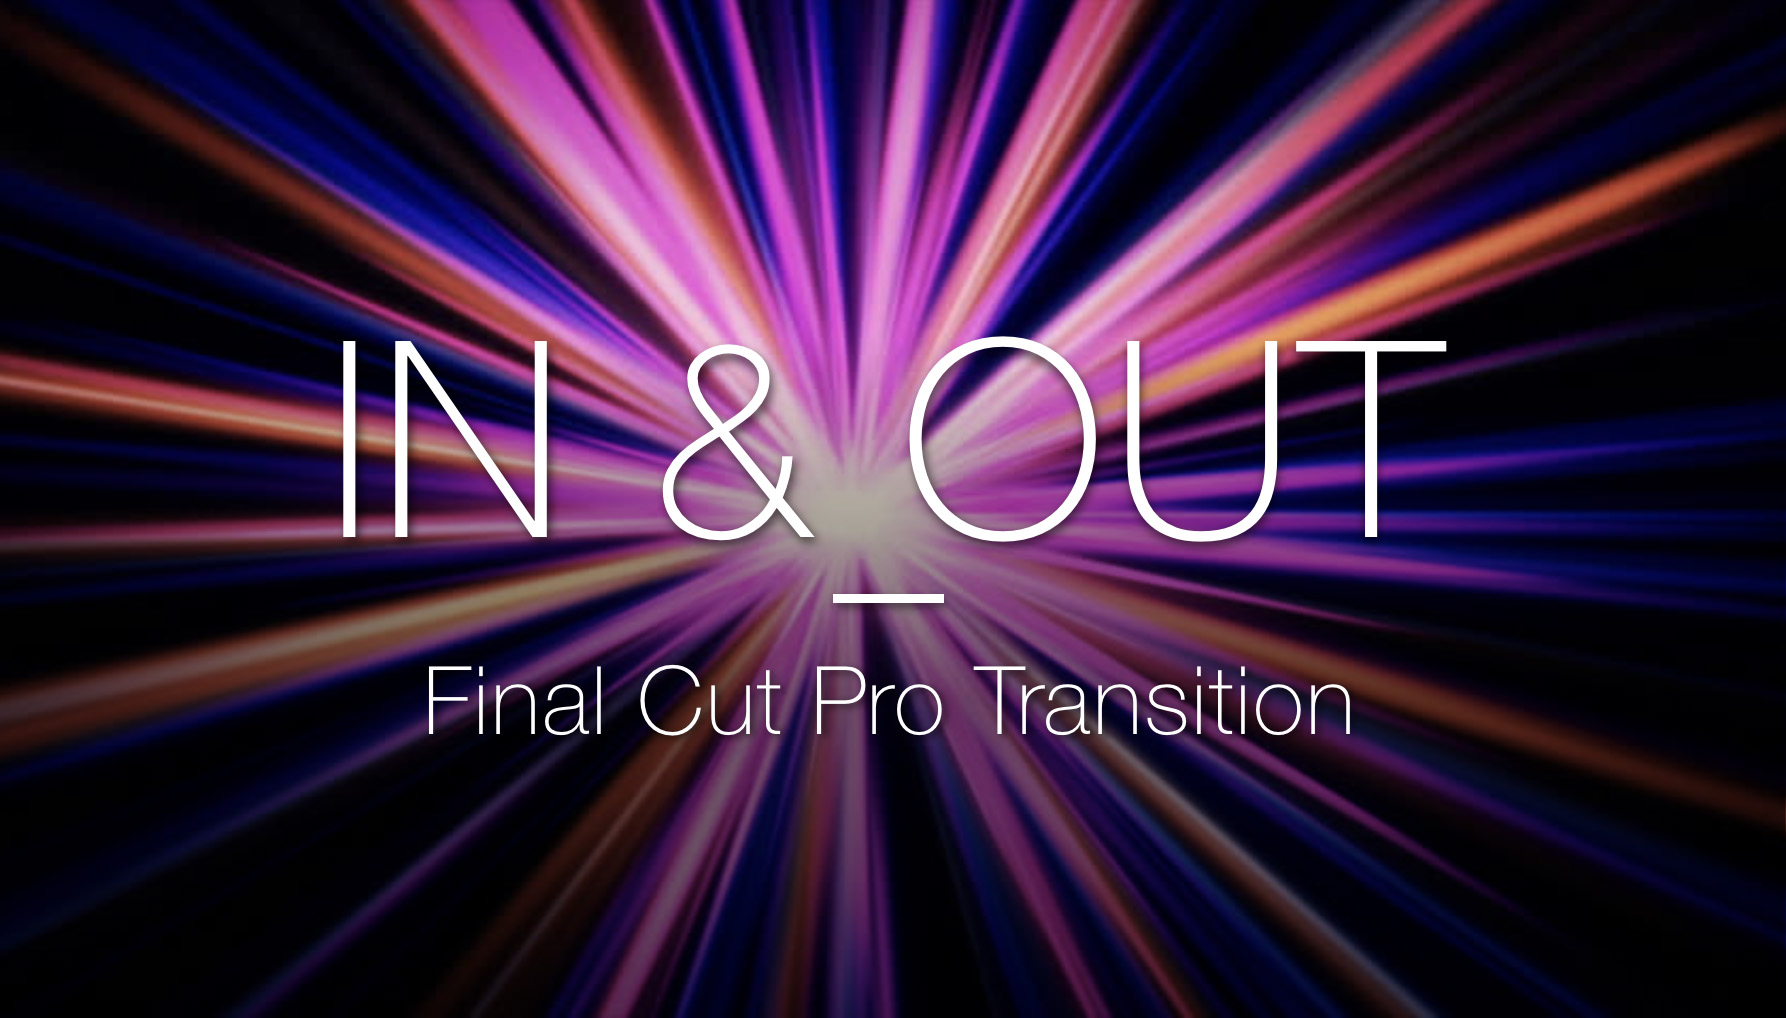 final cut pro transition free